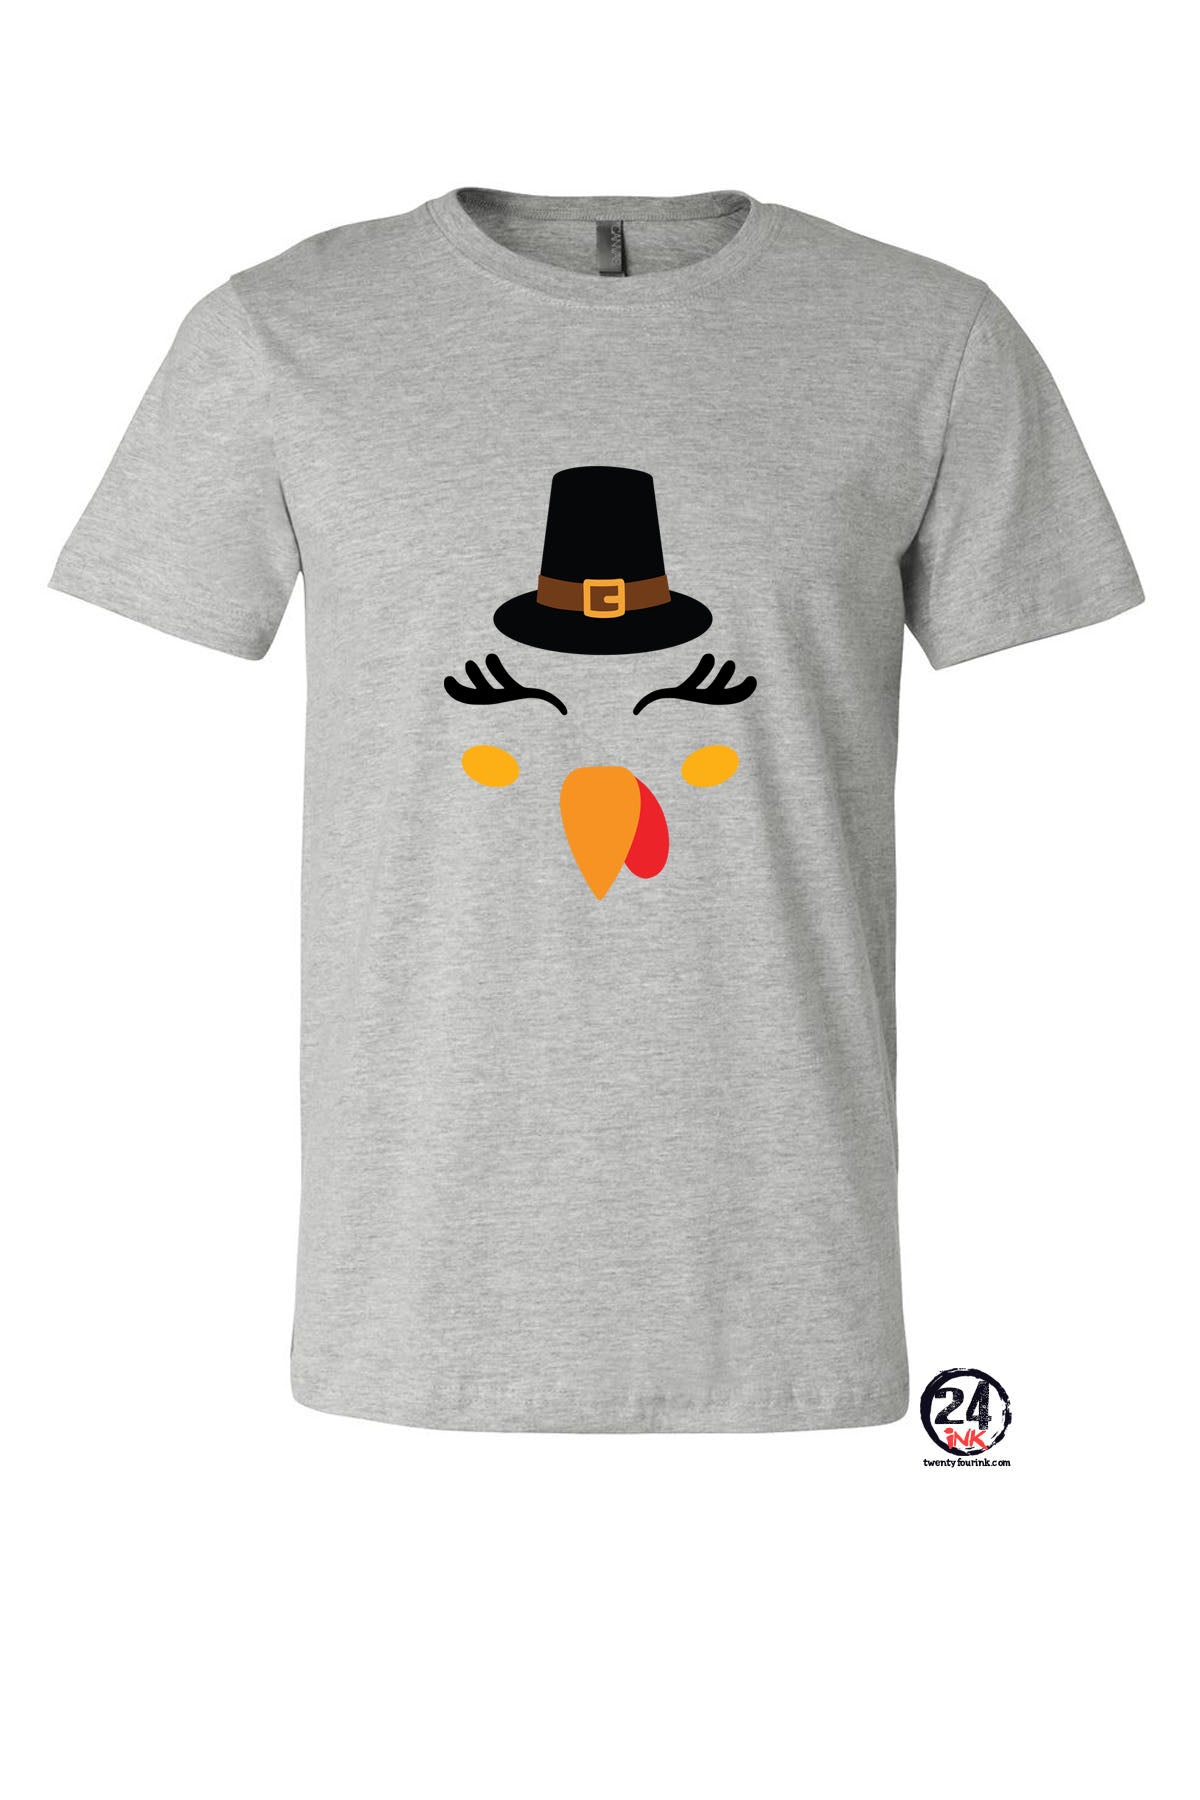 Turkey Face T-Shirt Design 10